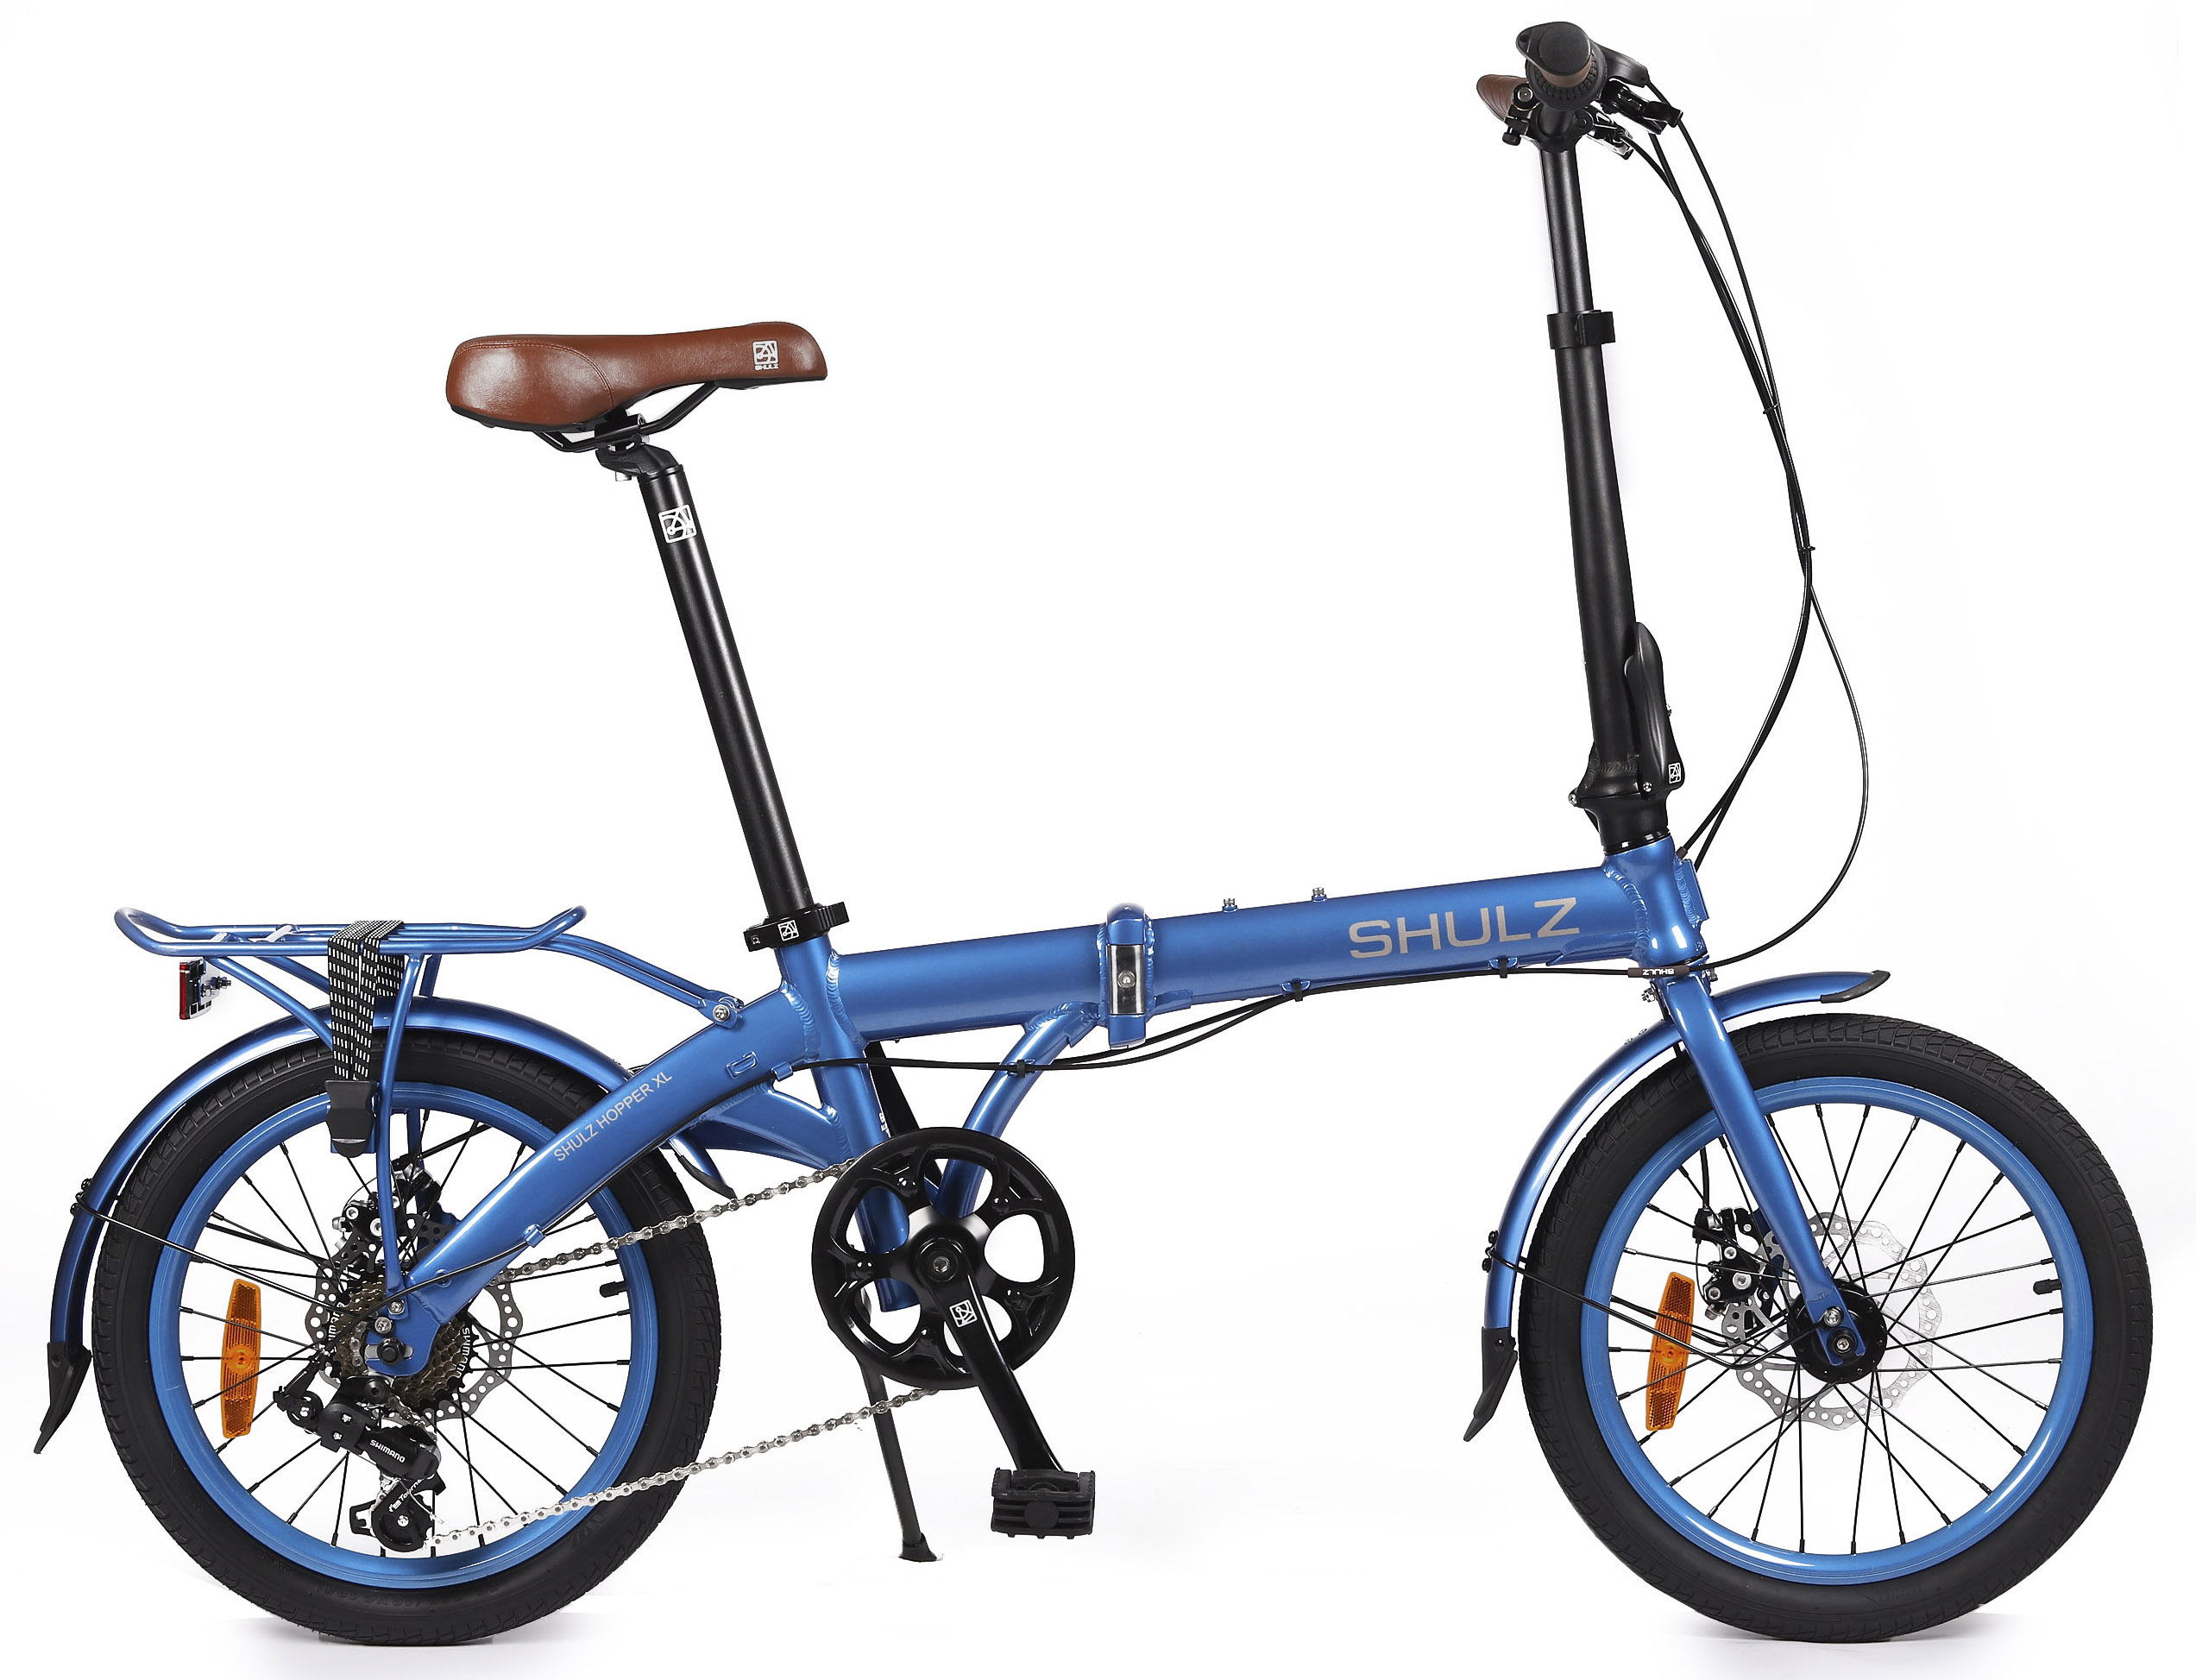  Отзывы о Складном велосипеде Shulz Hopper XL 2020